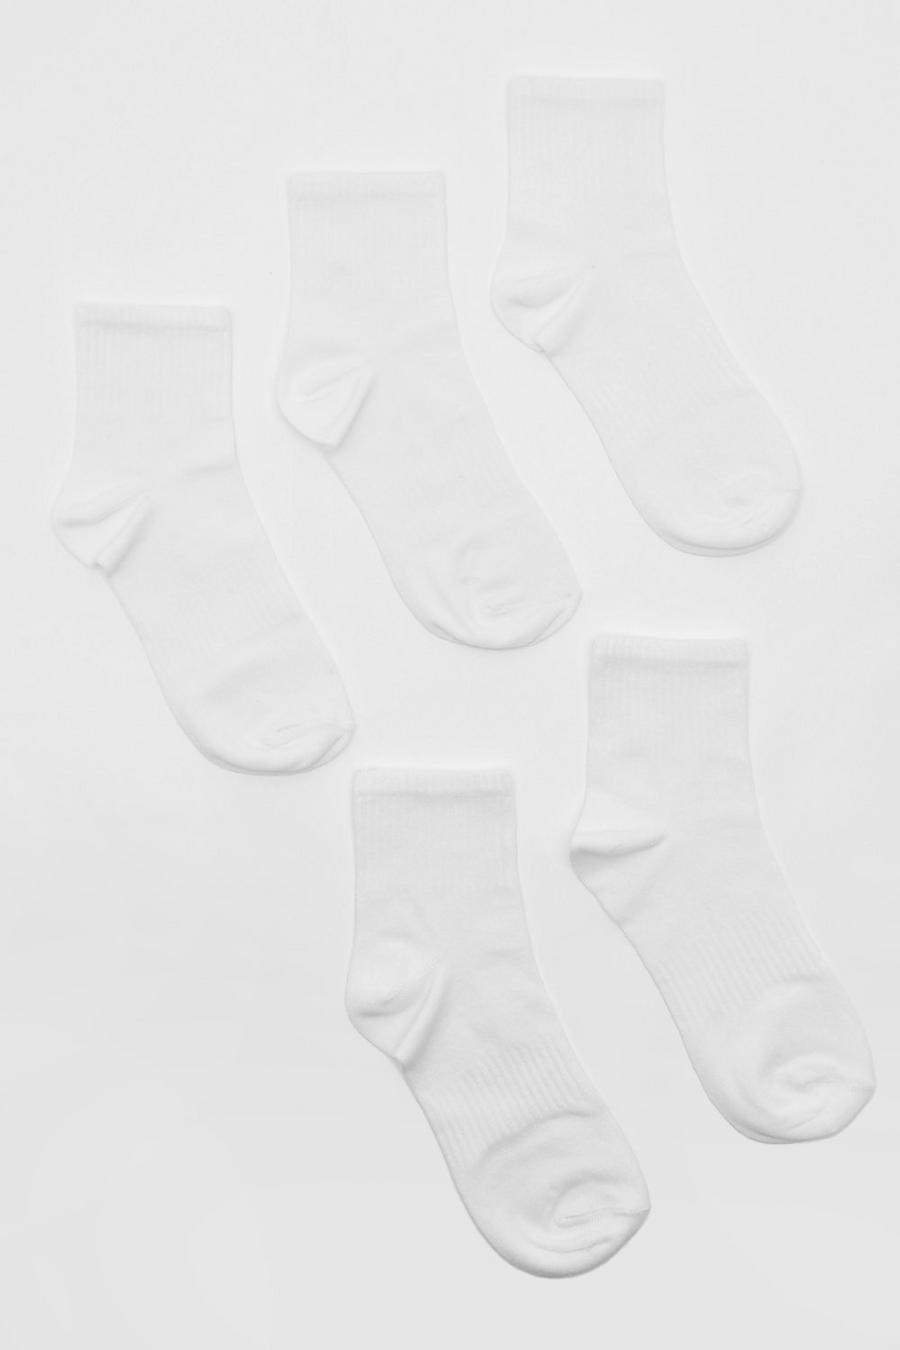 Calzini sportivi alla caviglia bianchi in tinta unita - set di 5 paia, White